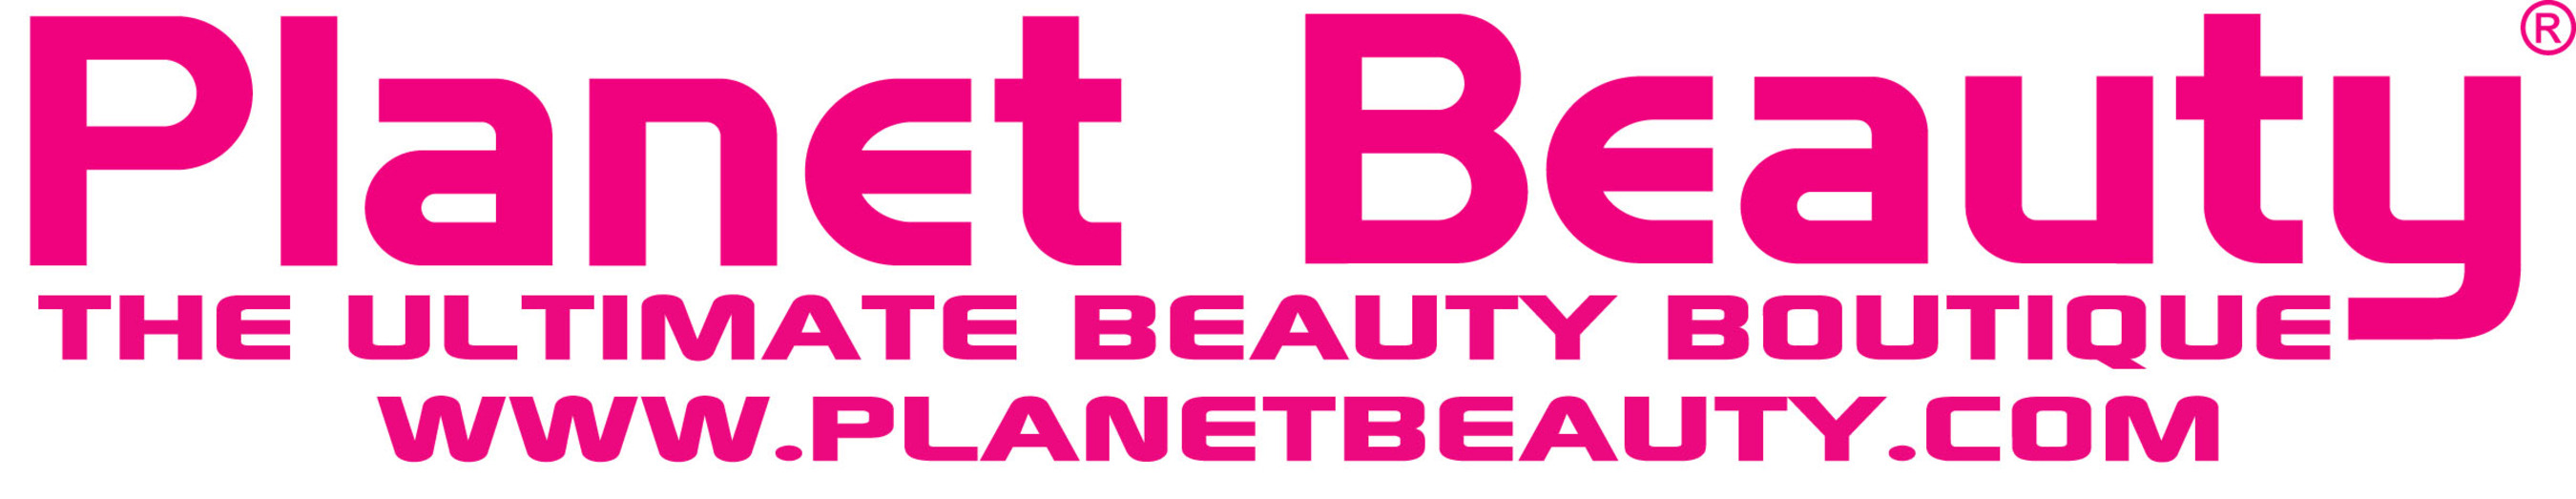 Planet Beauty Logo. (PRNewsFoto/Planet Beauty) (PRNewsFoto/)